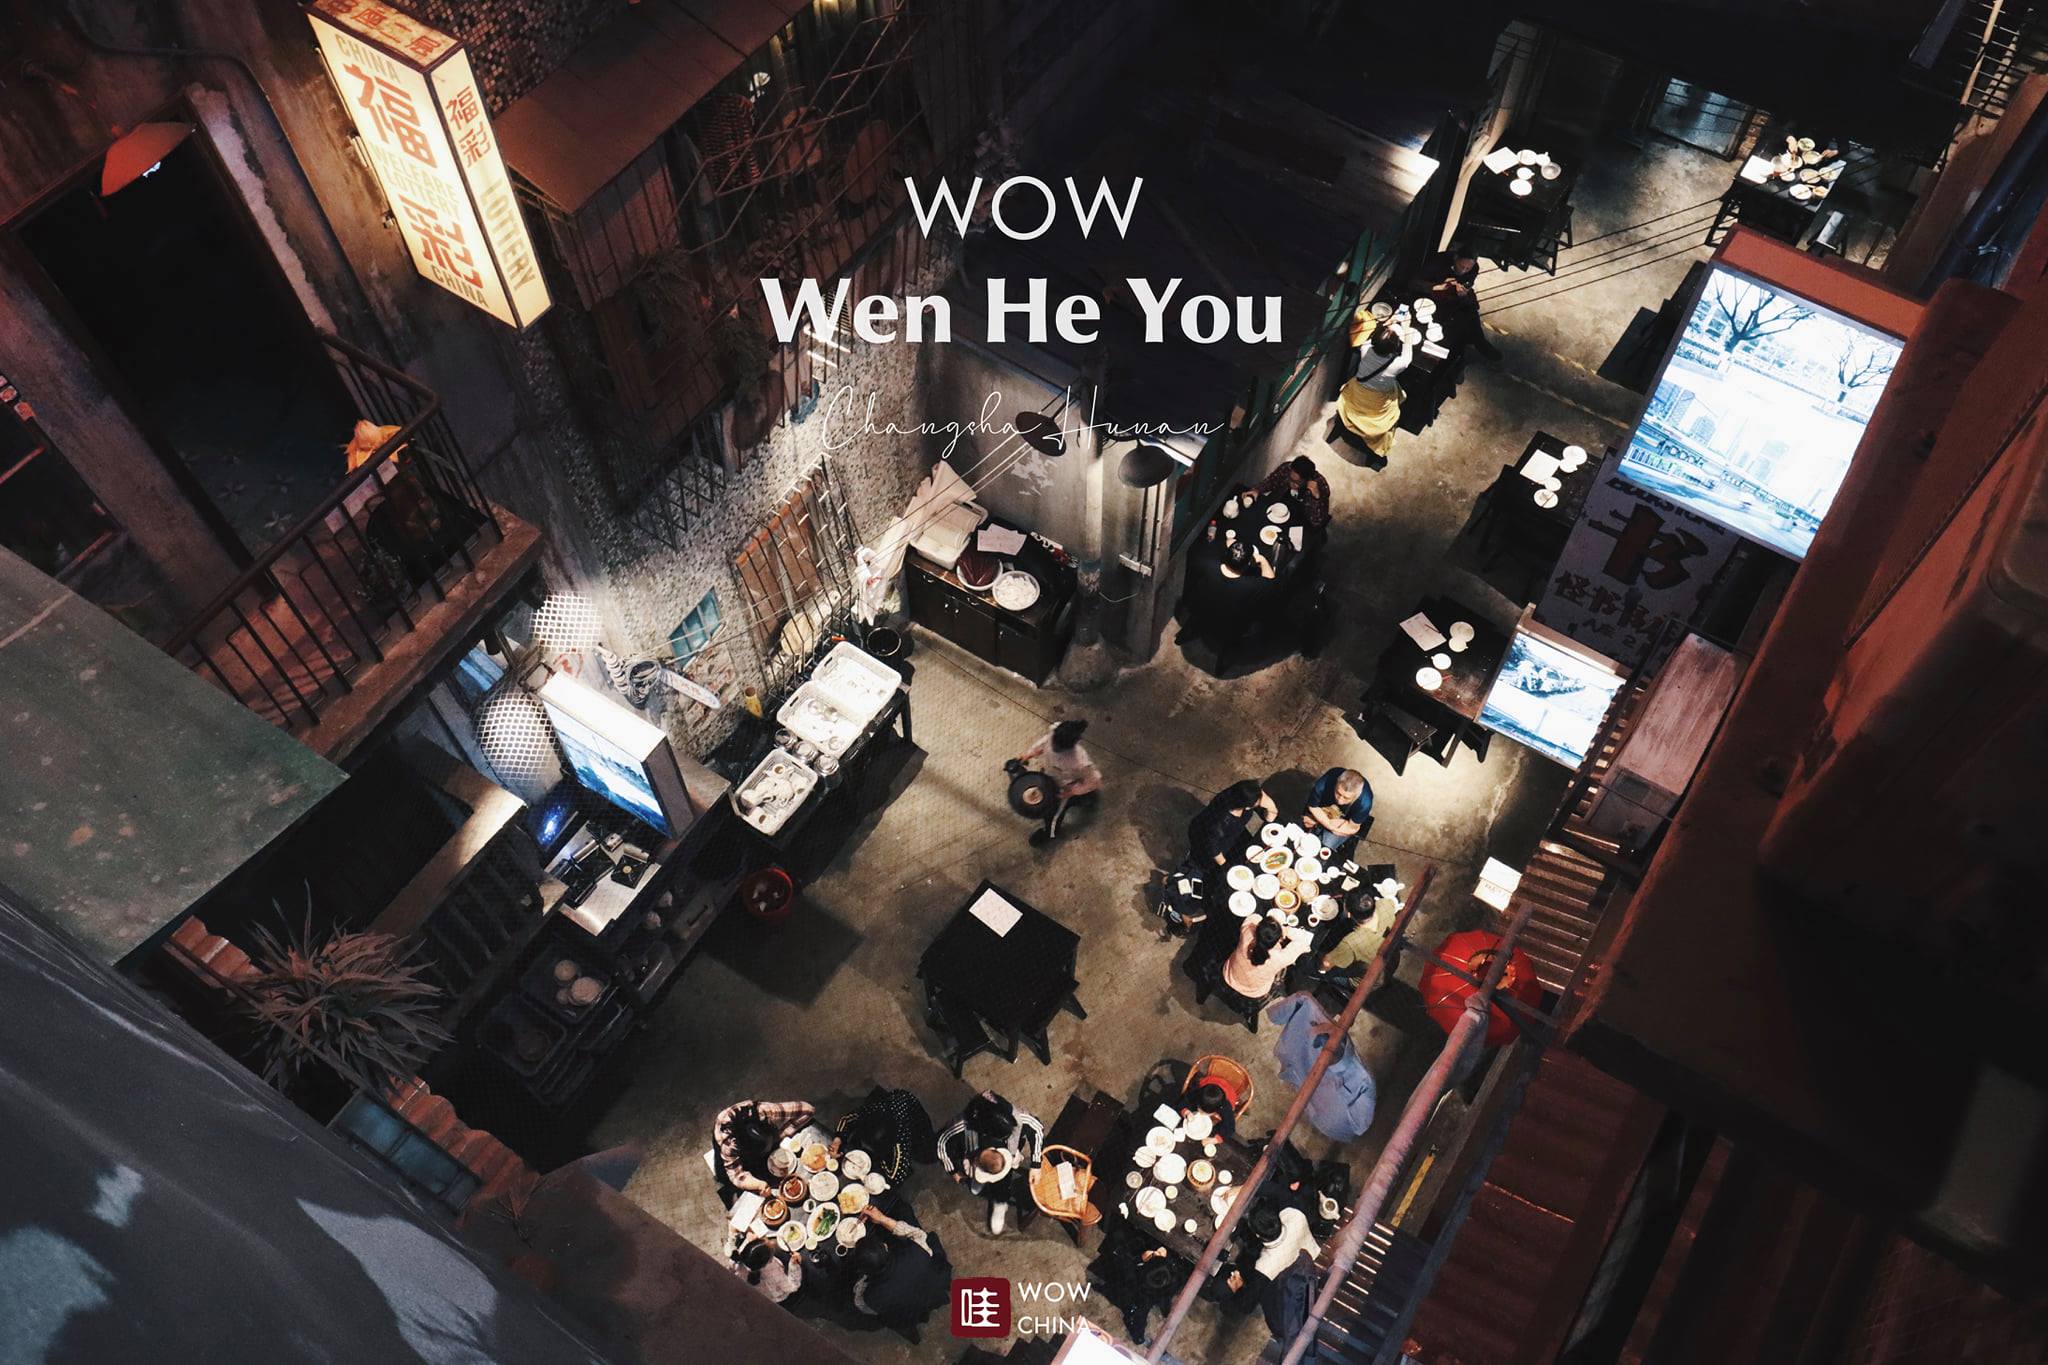 เหวินเหอโหย่ว สถานที่ยอดฮิตในจีน
จากร้านอาหารย้อนยุคสุด #WOW ในนครฉางซา
สู่โมเดล…